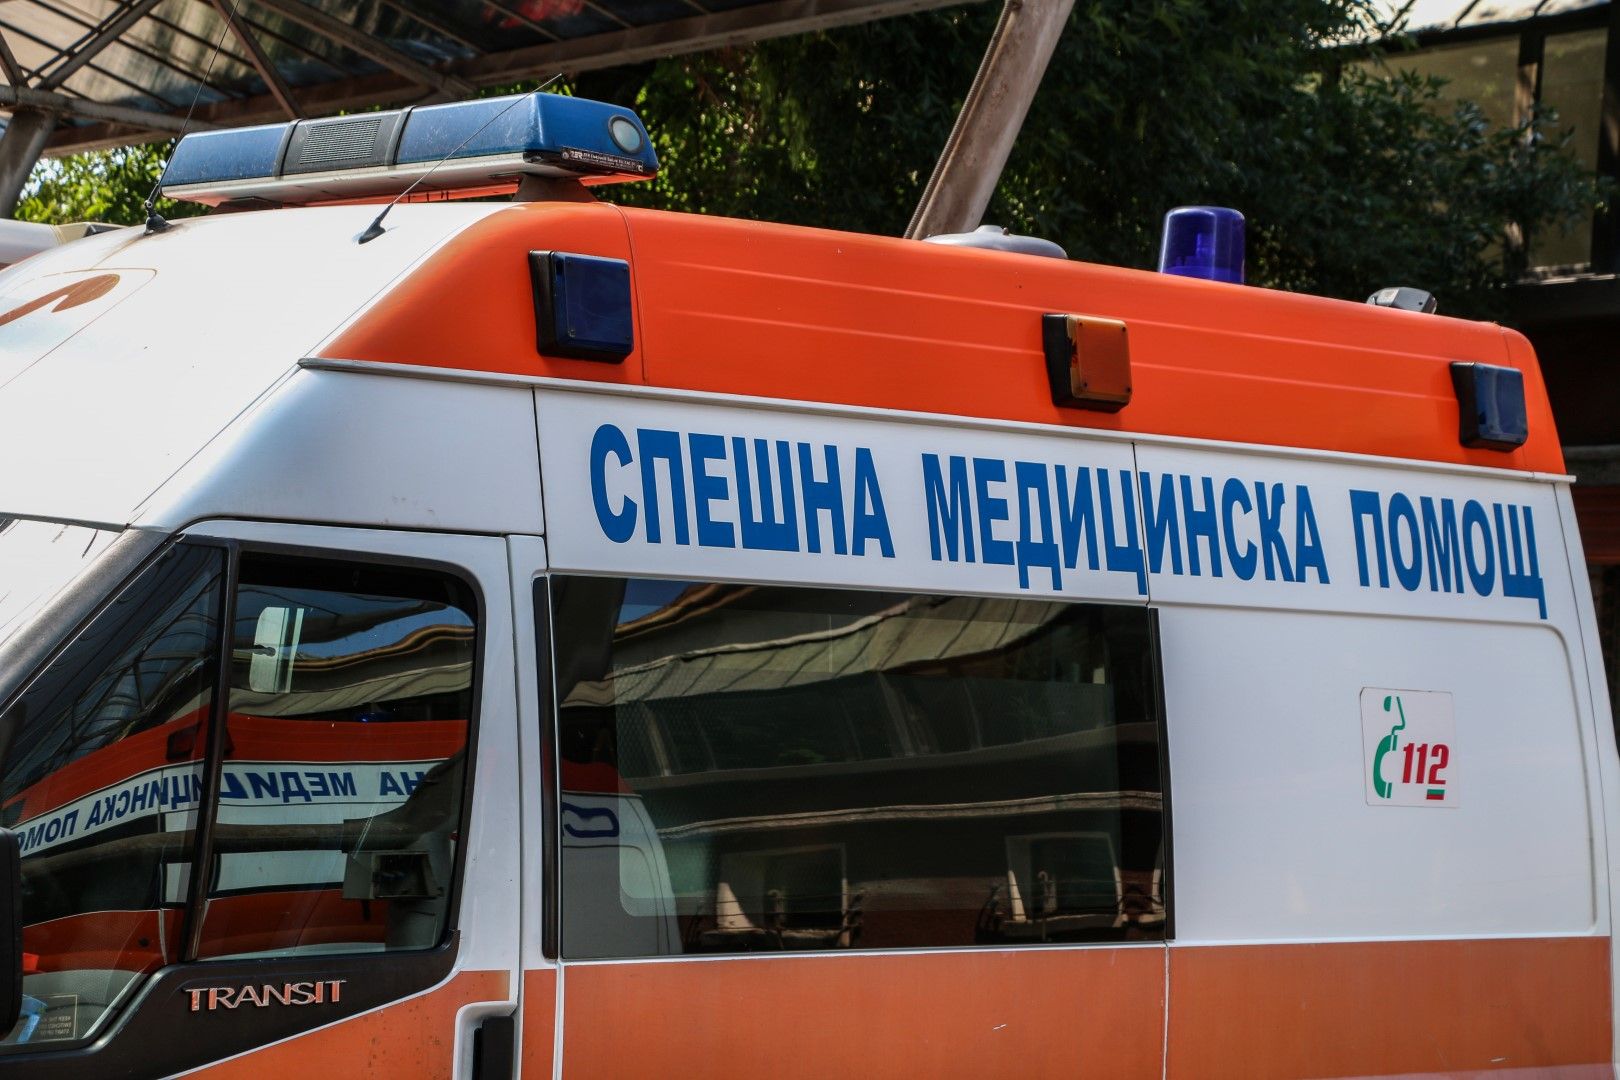 Линейката е била паркирана на бул. "Христо Ботев" в Пловдив